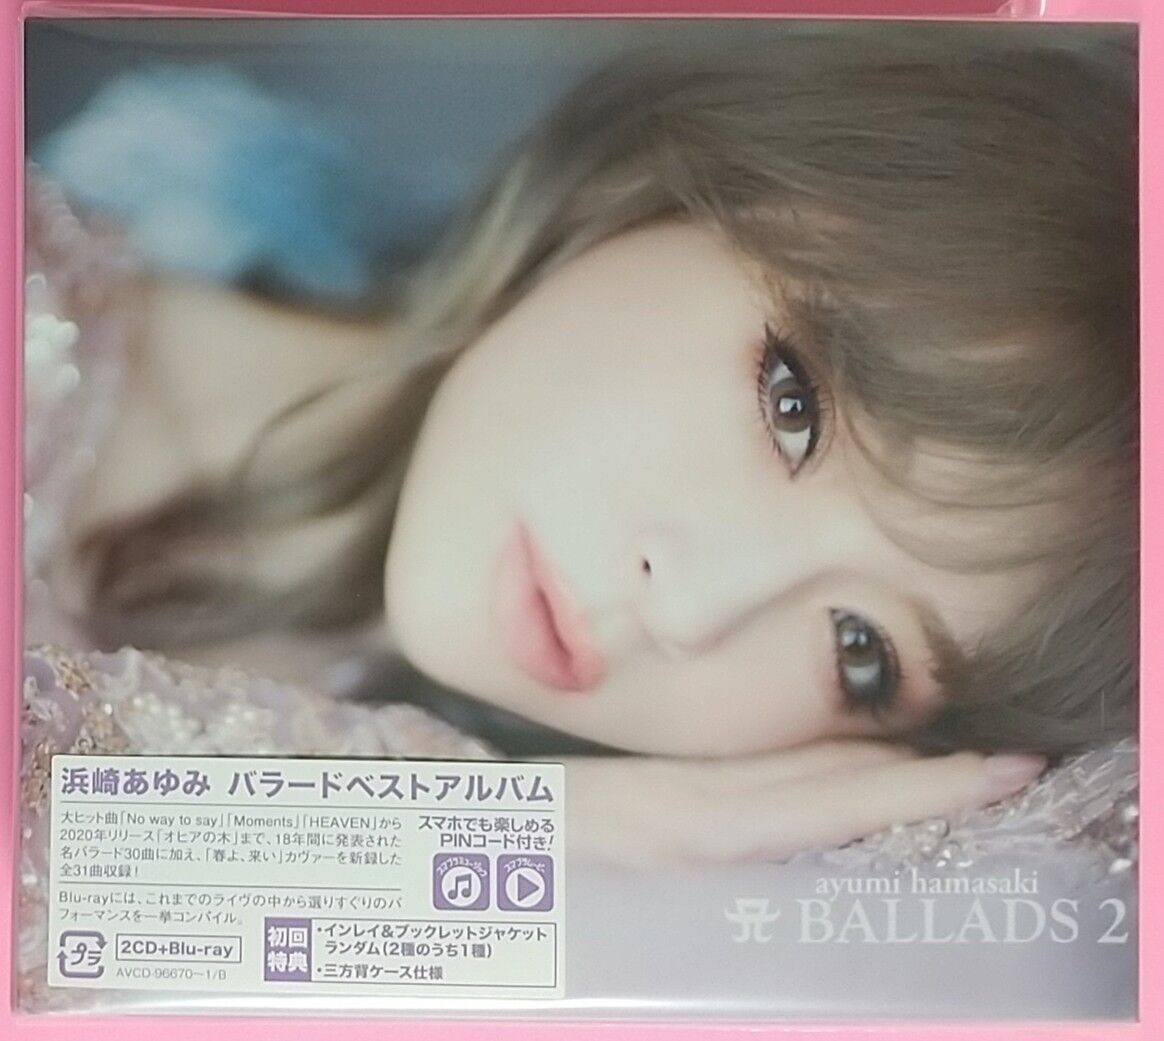 浜崎あゆみ A BALLADS2 TA限定盤2CD+2DVD+Tシャツ - www.bisaggio.com.br